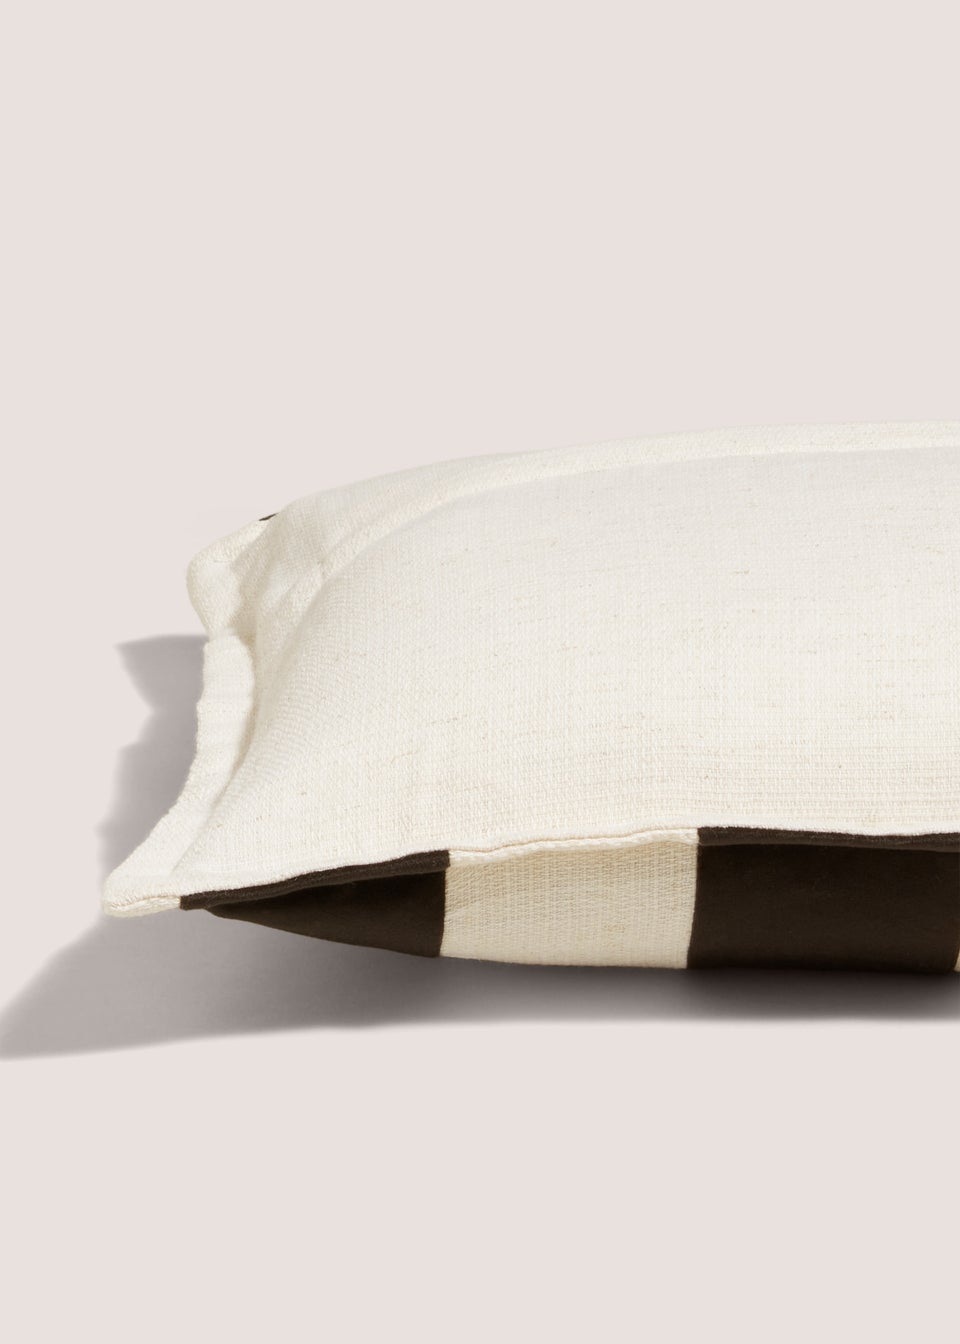 Stripe Velvet Cushion (30cm x 50cm)